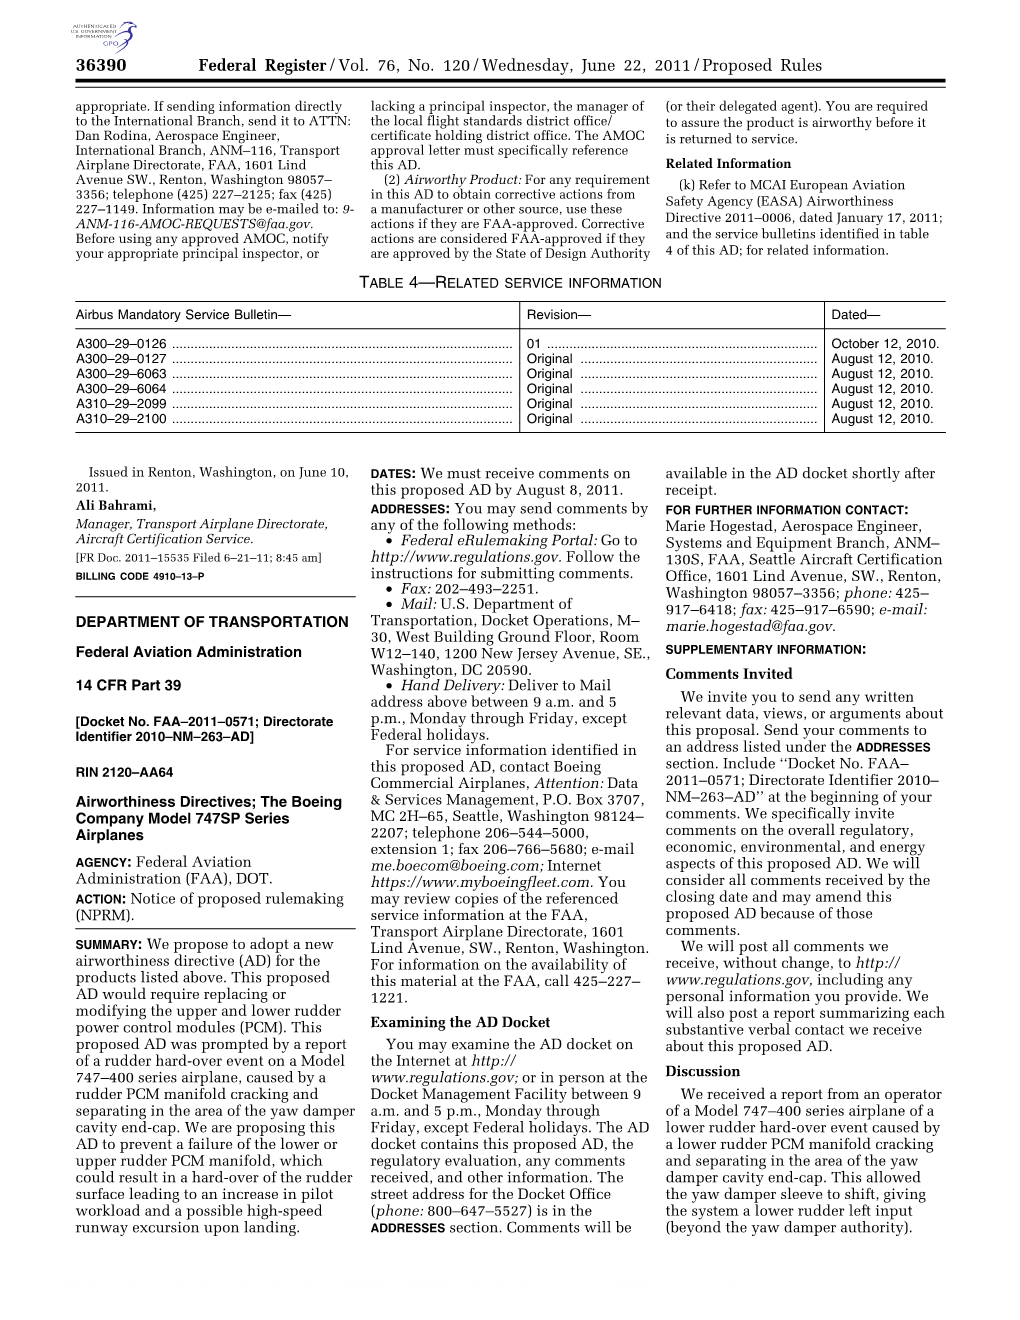 Federal Register/Vol. 76, No. 120/Wednesday, June 22, 2011